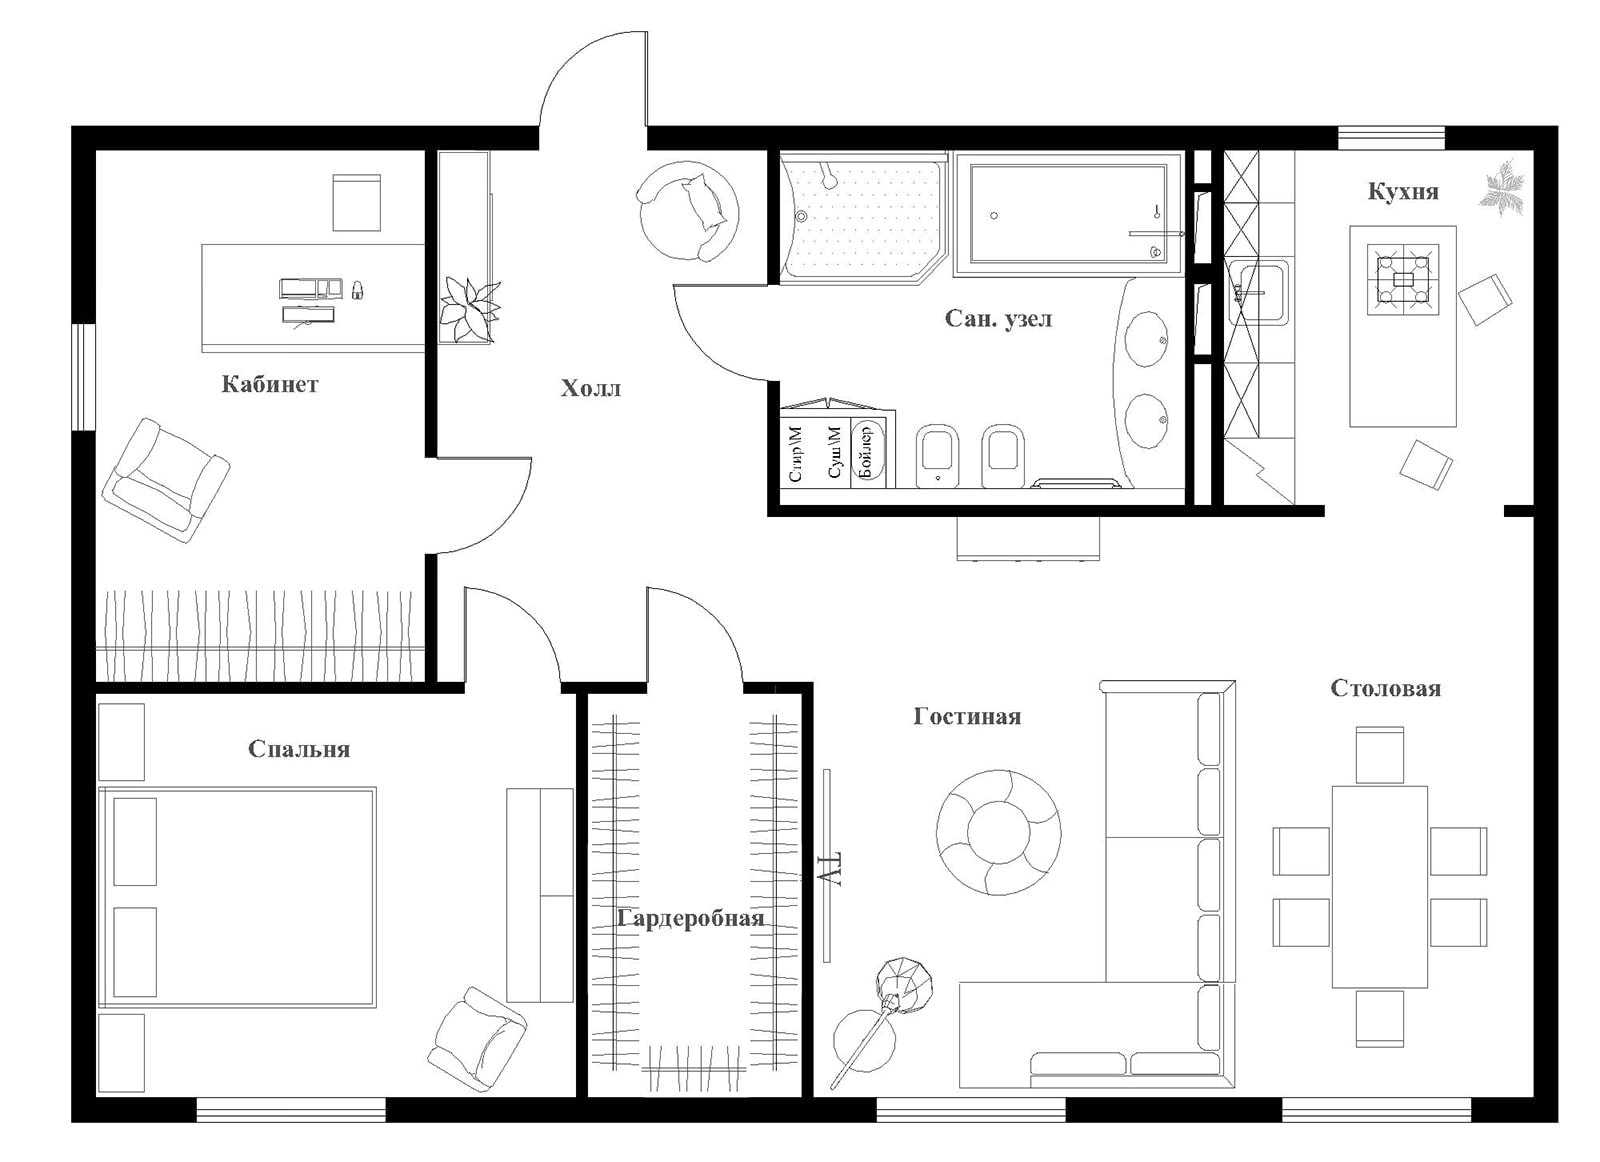 Планировка квартиры - одно-, двух-, трех-, четырех- комнатной